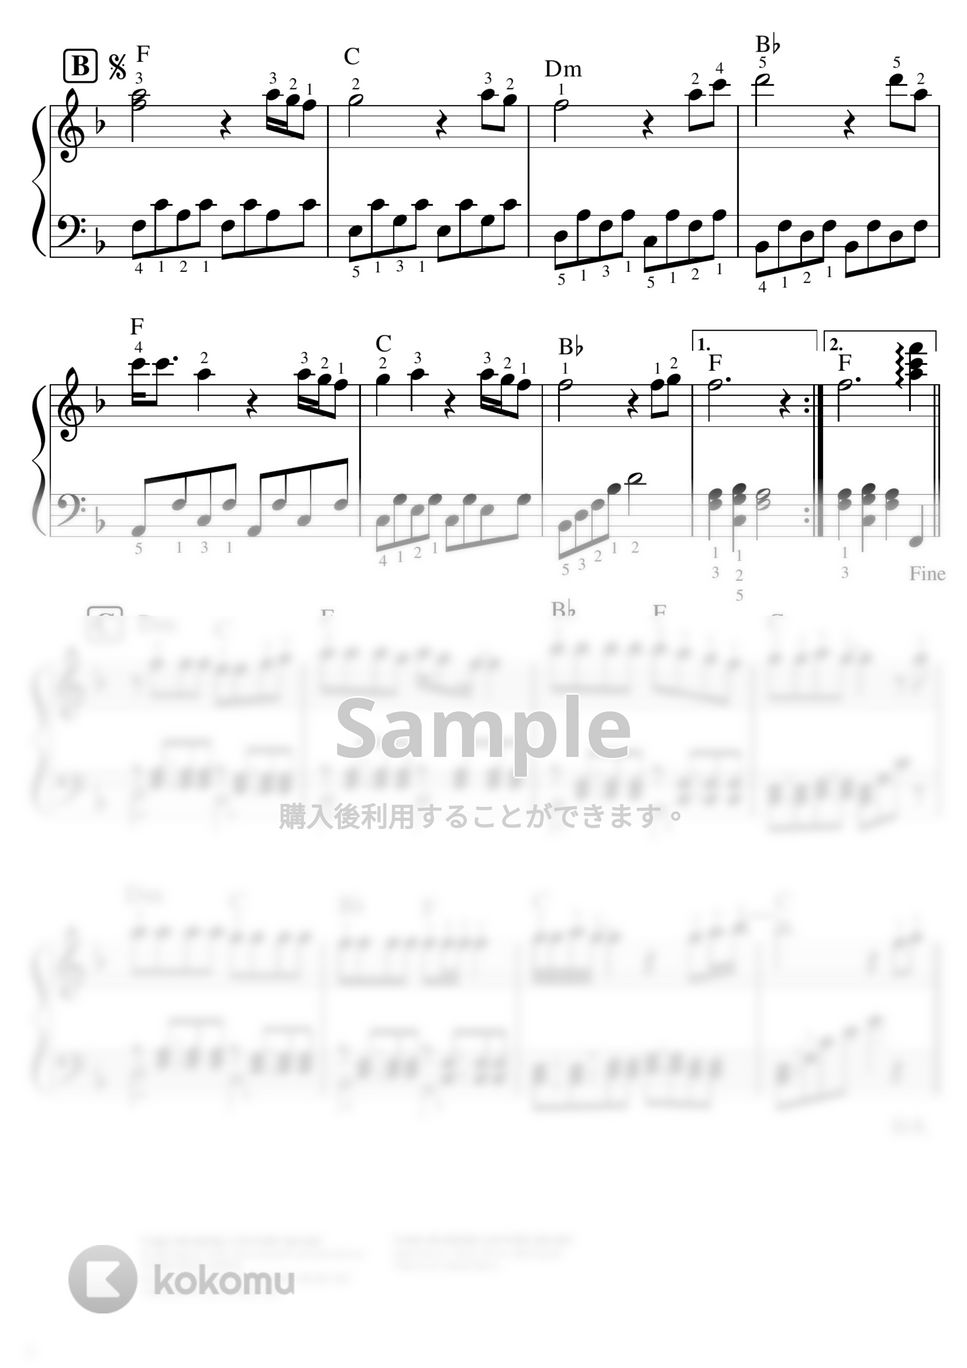 ジョン・デンバー - 【初級】カントリー・ロード/耳をすませば (耳をすませば,スタジオジブリ) by ピアノのせんせいの楽譜集